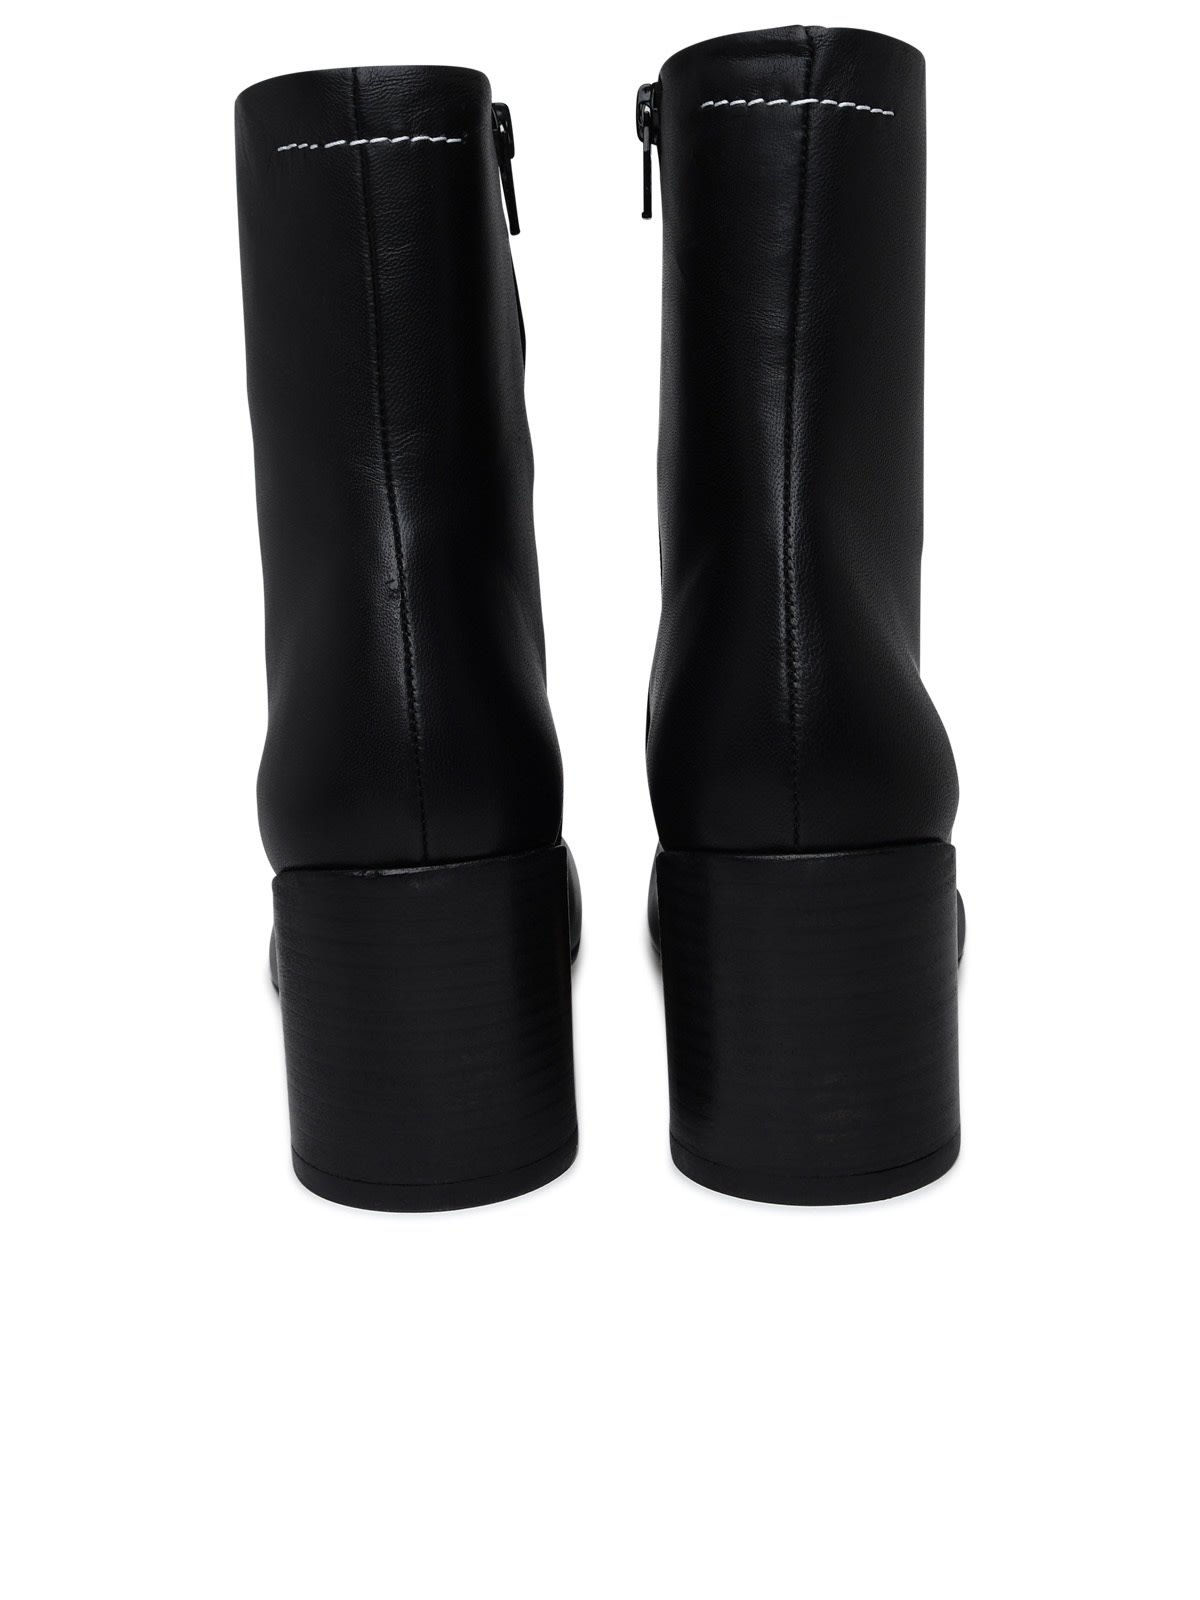 Shop Mm6 Maison Margiela Black Leather Ankle Boots